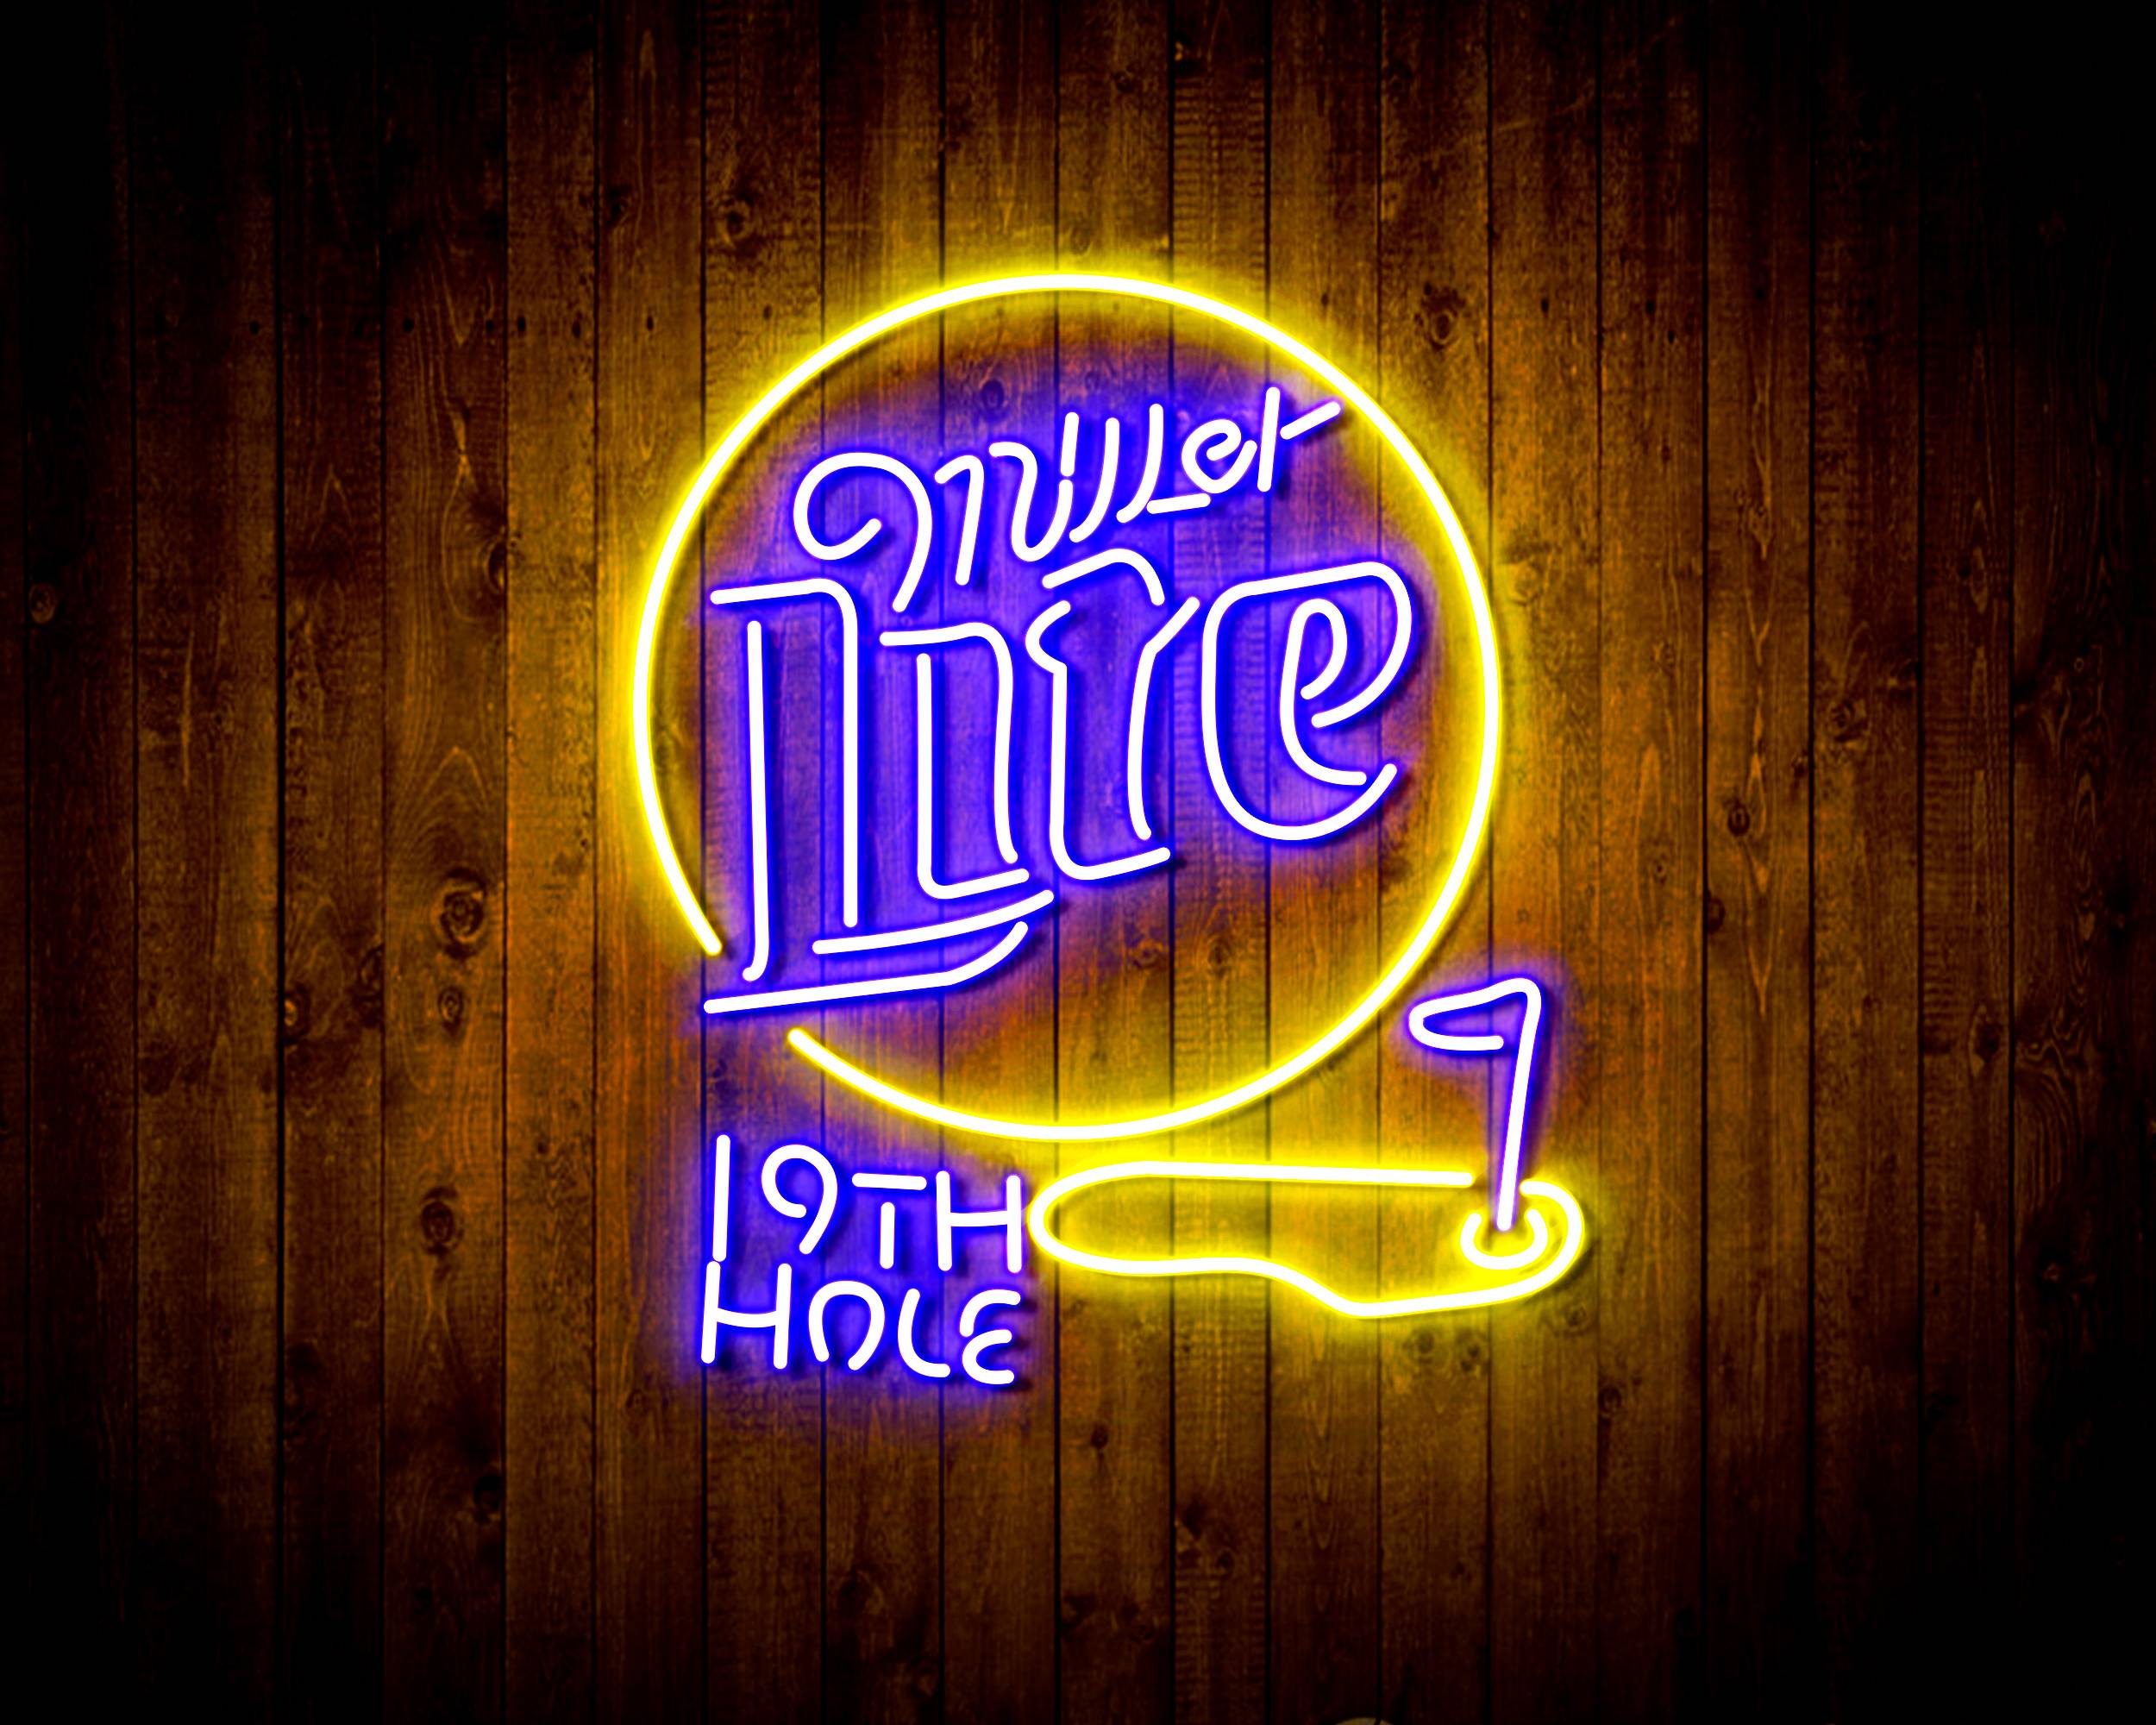 Miller Lite 19th Hole Handmade Neon Flex LED Sign